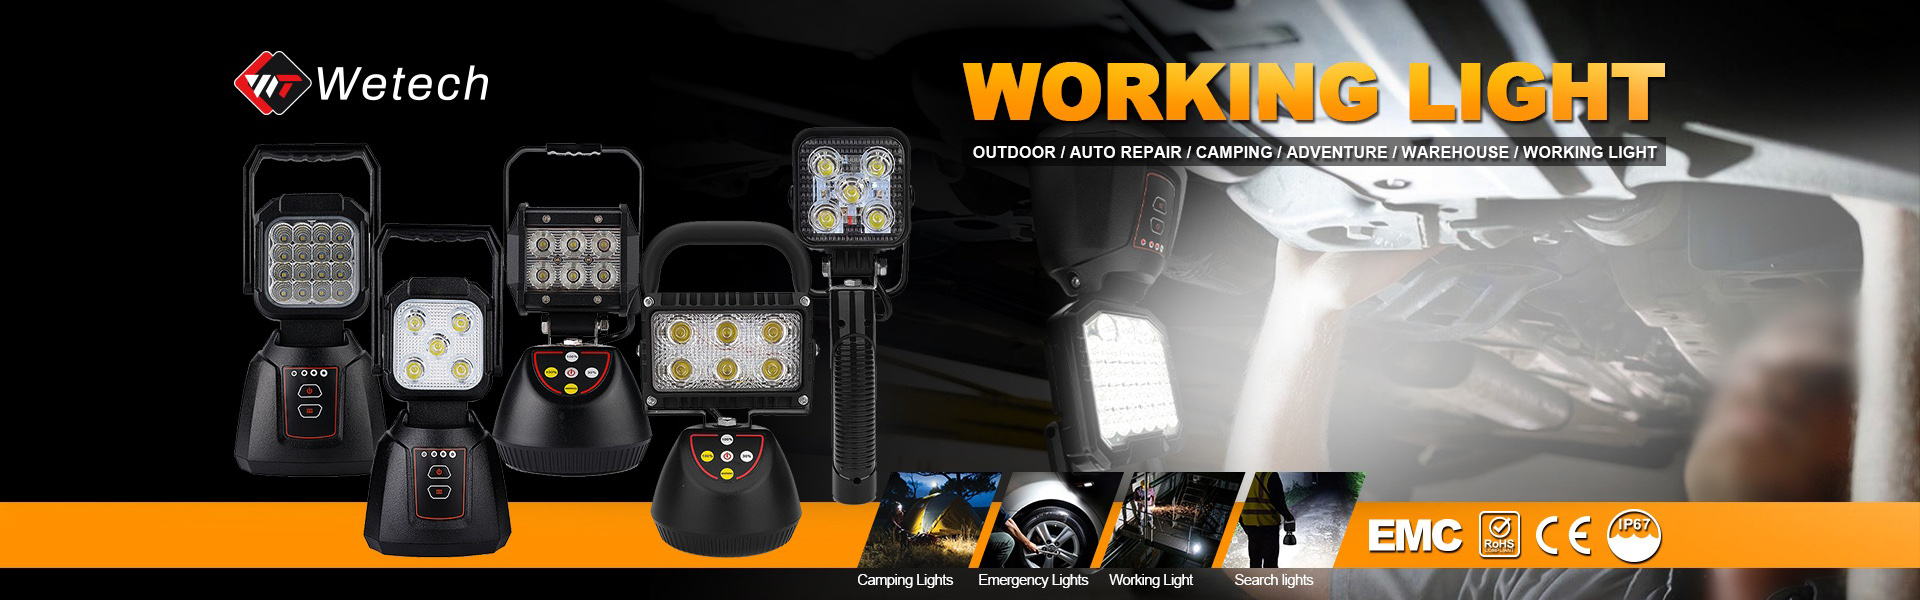 جهاز عرض شعار Gobbo ، LED Work Light ، LED Forklift Light,Wetech Electronic Technology Limited